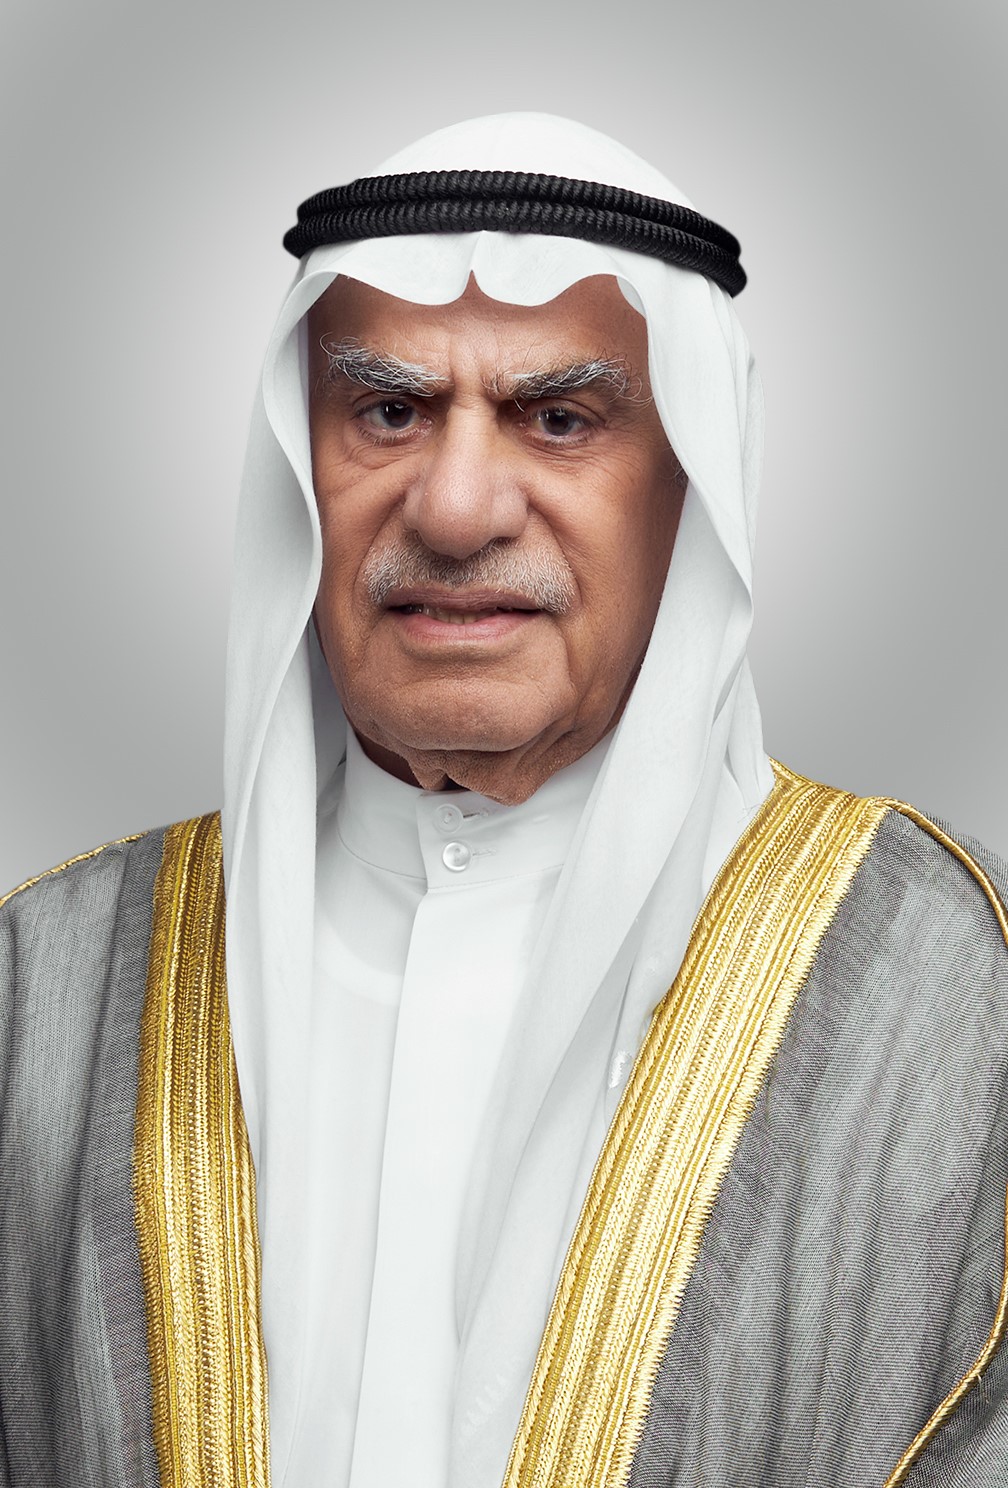 National Assembly Speaker Ahmad Al-Saadon